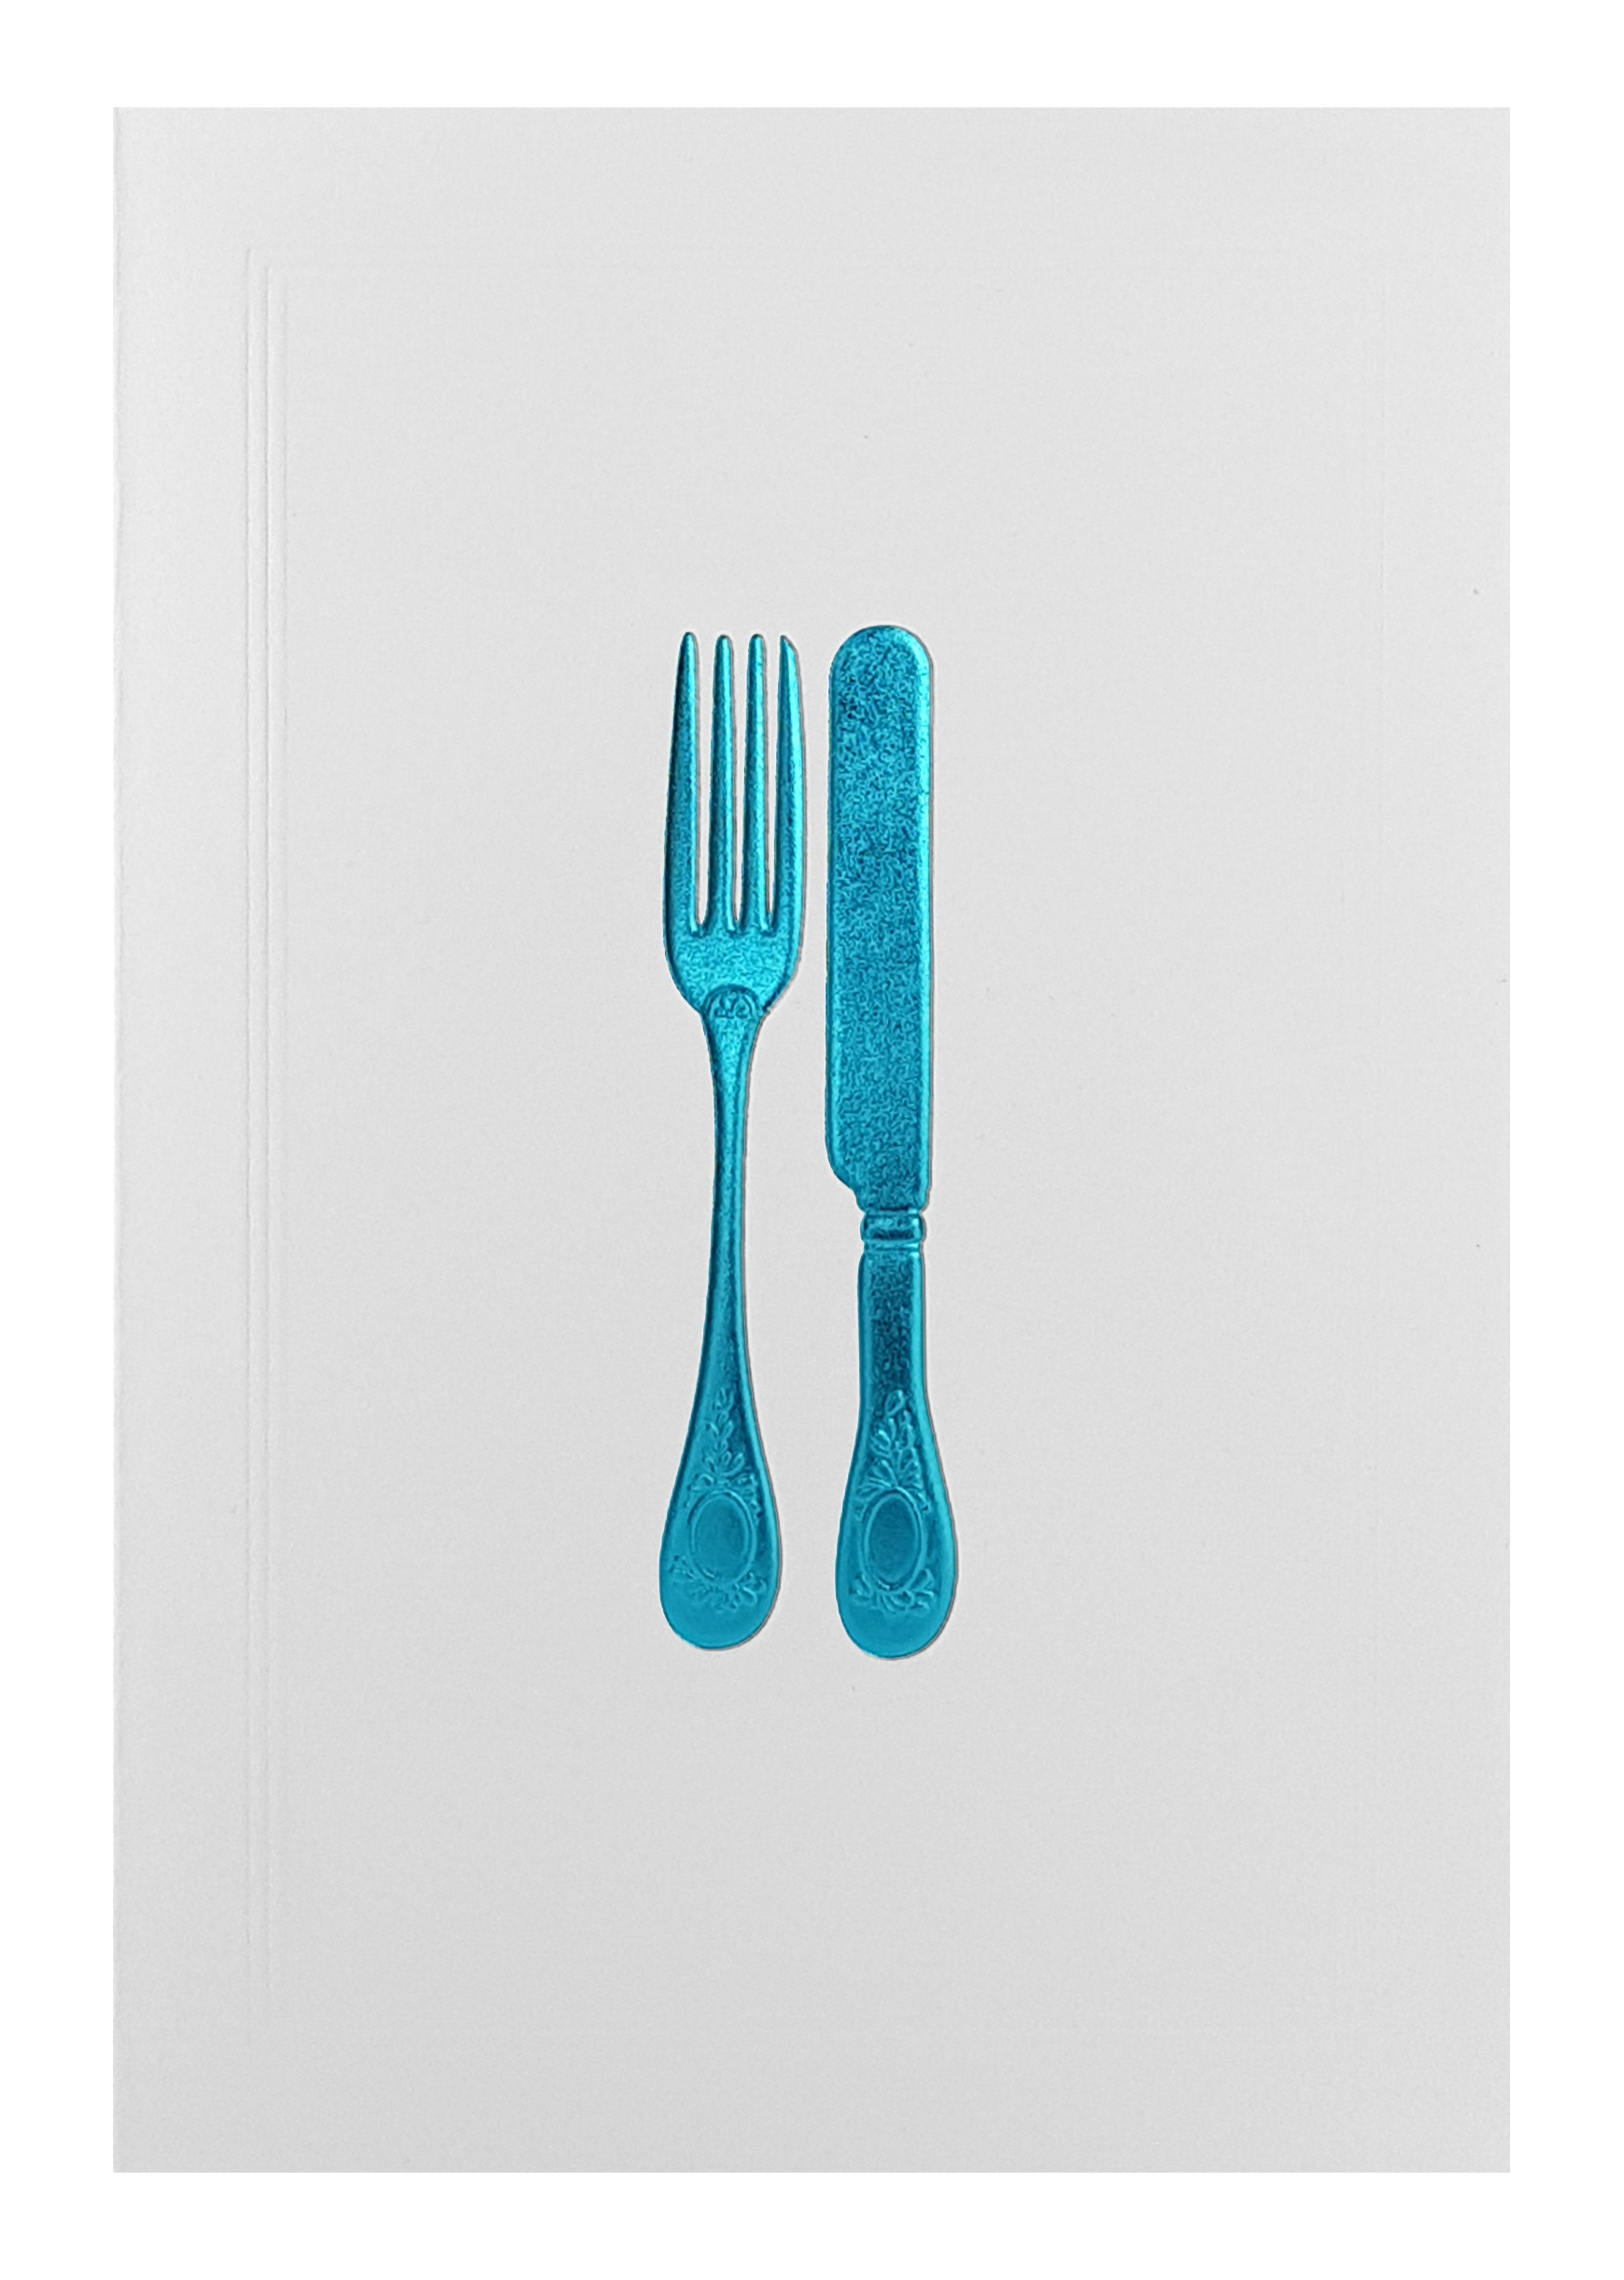 Carte de menu blanche - couverts bleu turquoise. Réf. 380